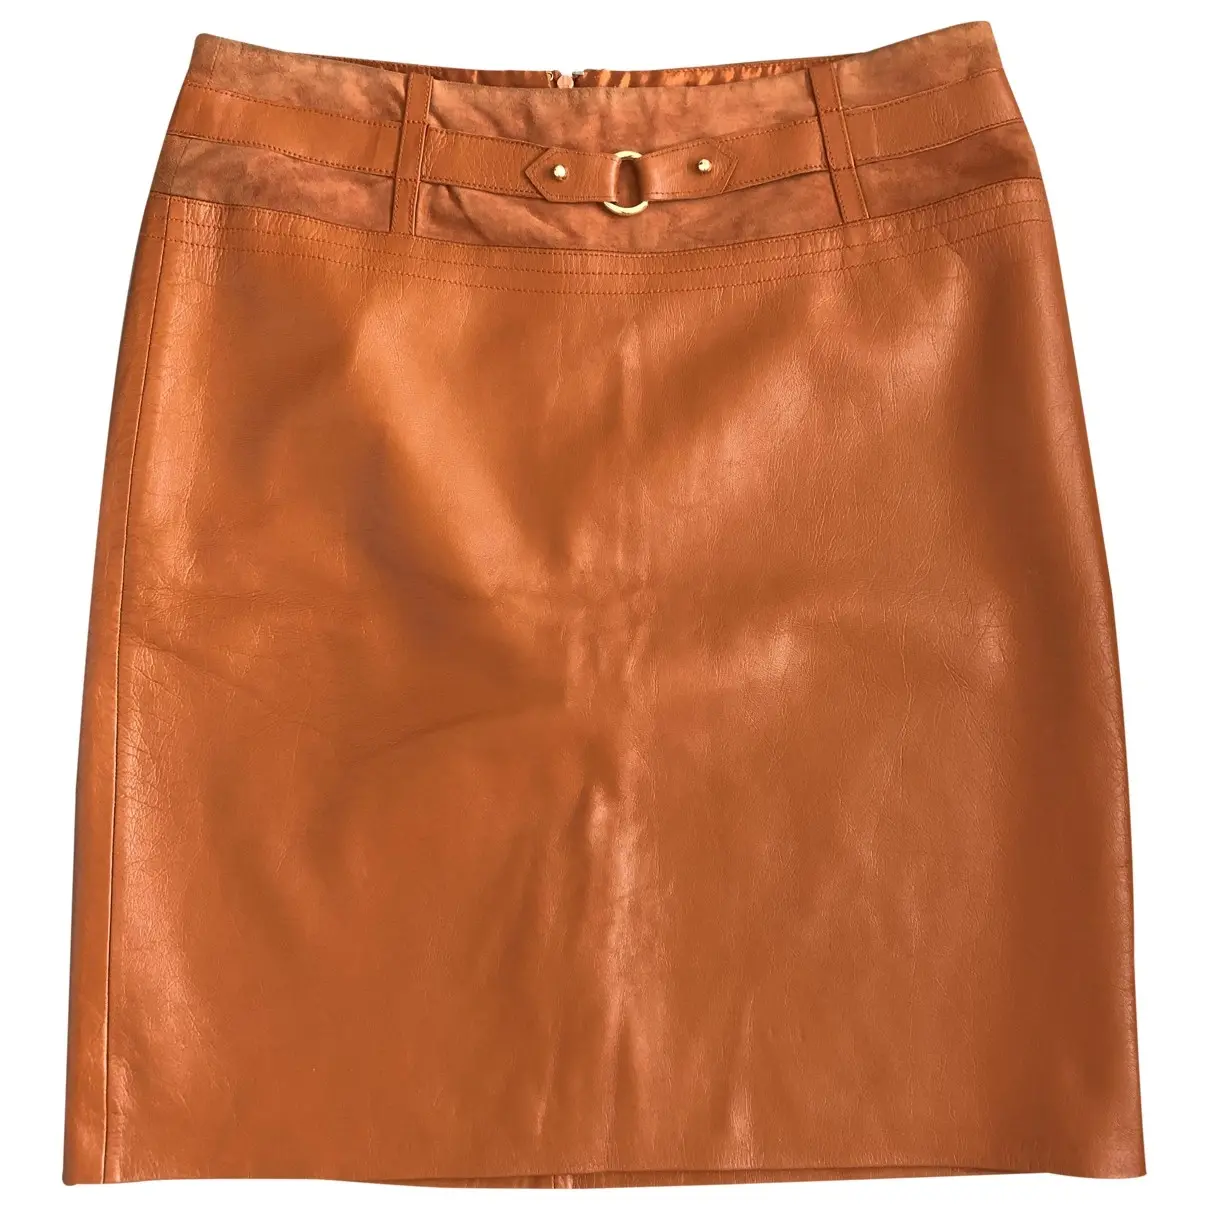 Leather mid-length skirt Bcbg Max Azria